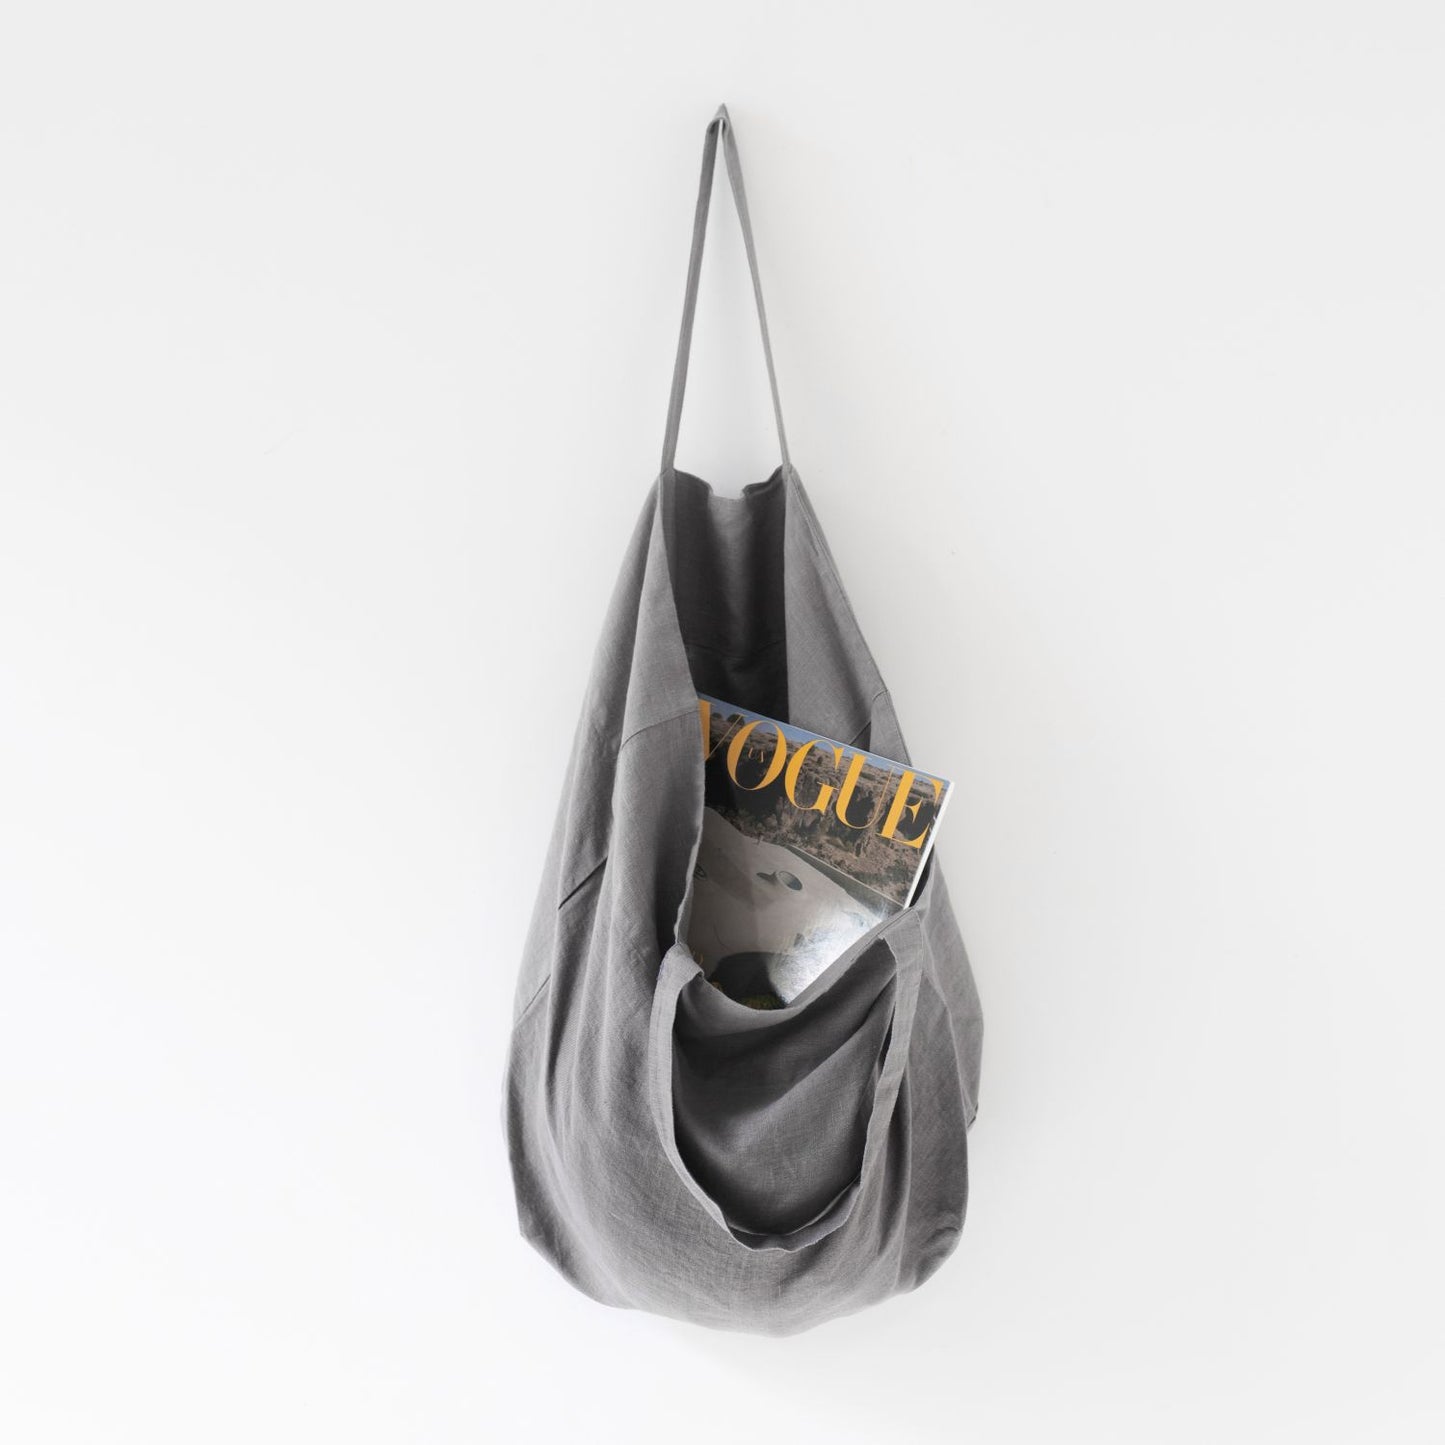 Medelstor tygväska i grå linne som hänger på en krok med sitt ena handtag. Väskan har formen av en rektangel med medellånga handtag. Från väskan skymtar en Vouge tidning.